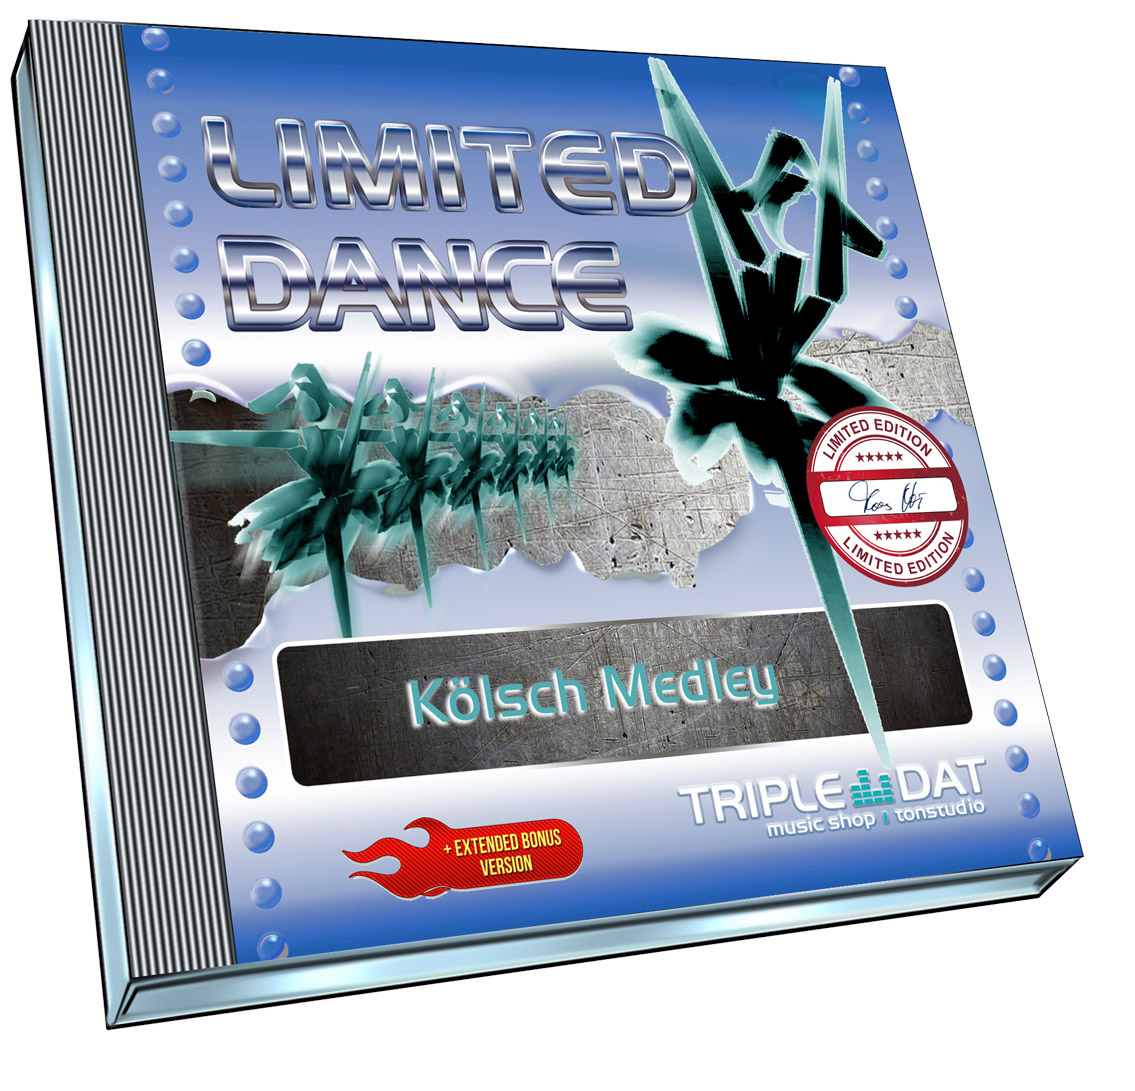 Limited Dance - Kölsch Medley - Download - + Extended Version